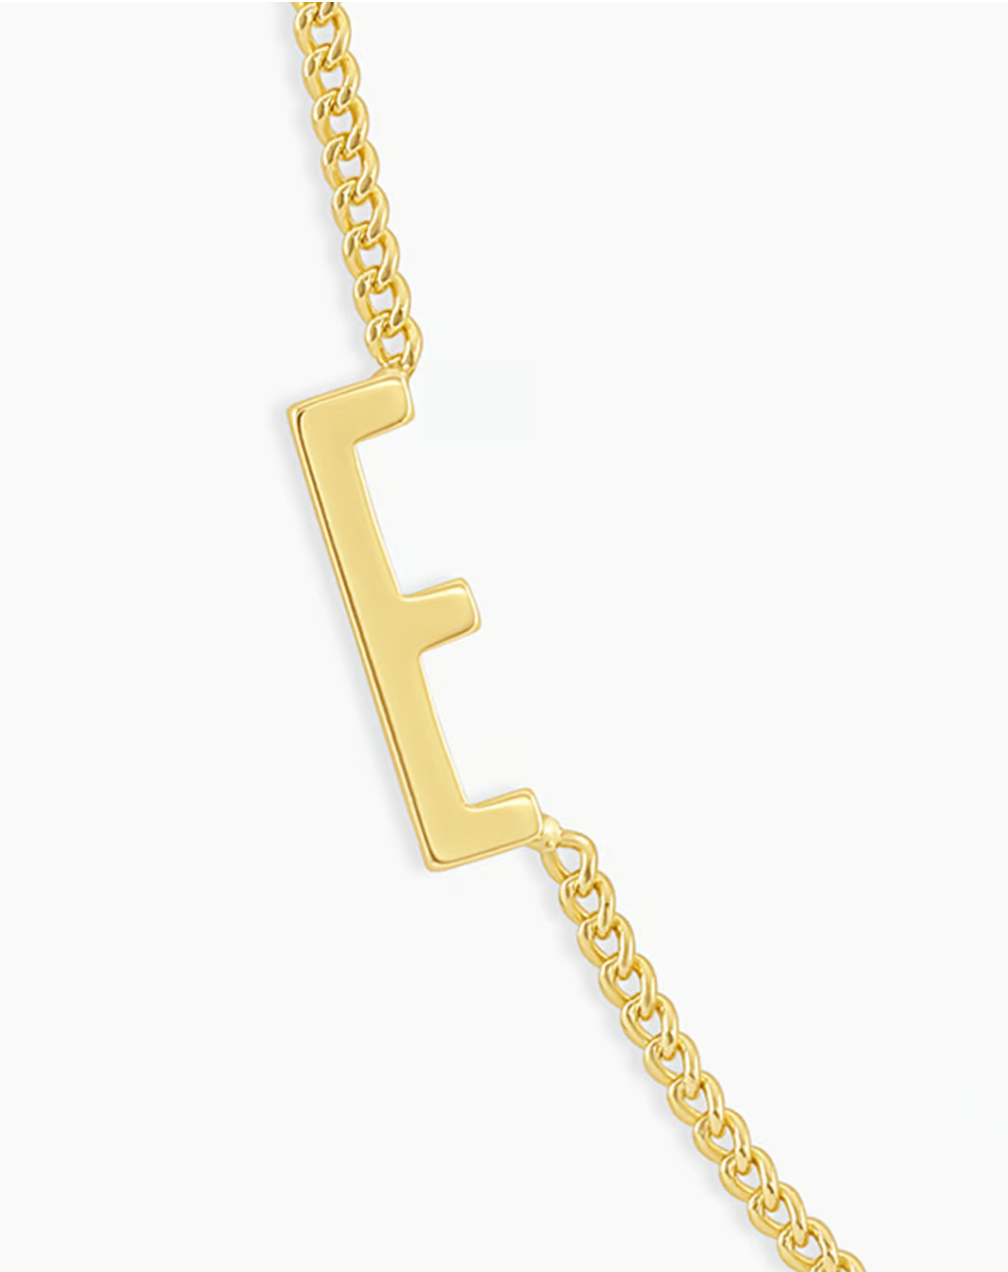 Wilder alphabet necklace - E